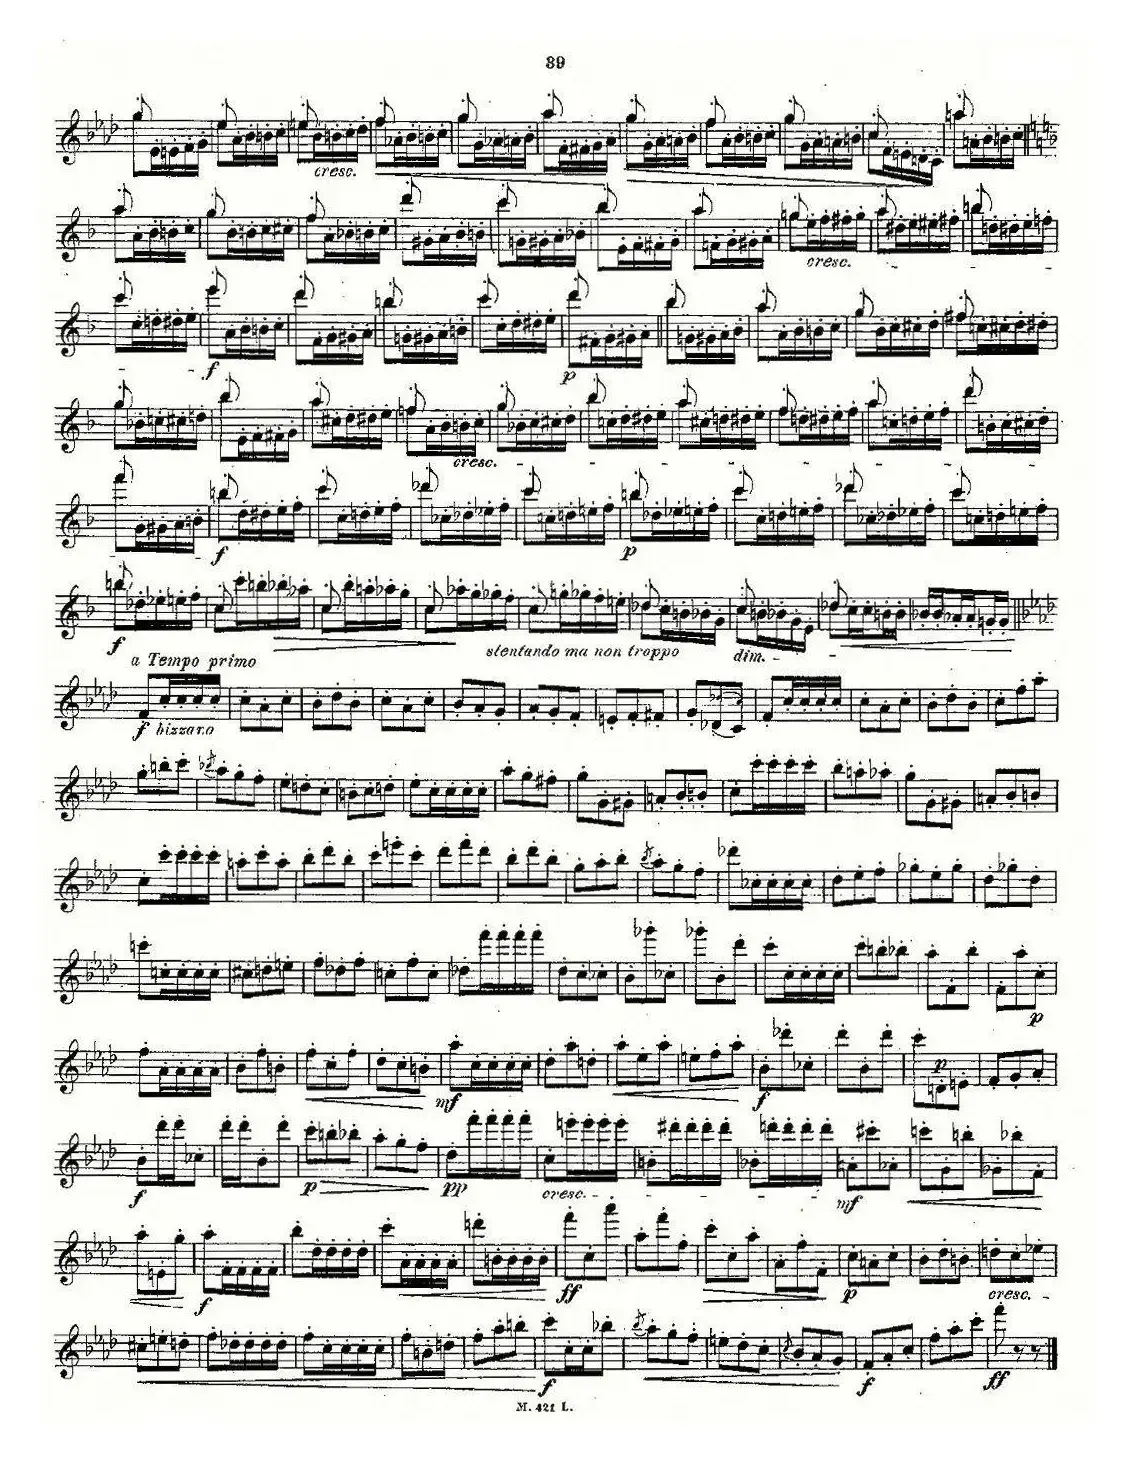 24首长笛练习曲 Op.15 之16—20